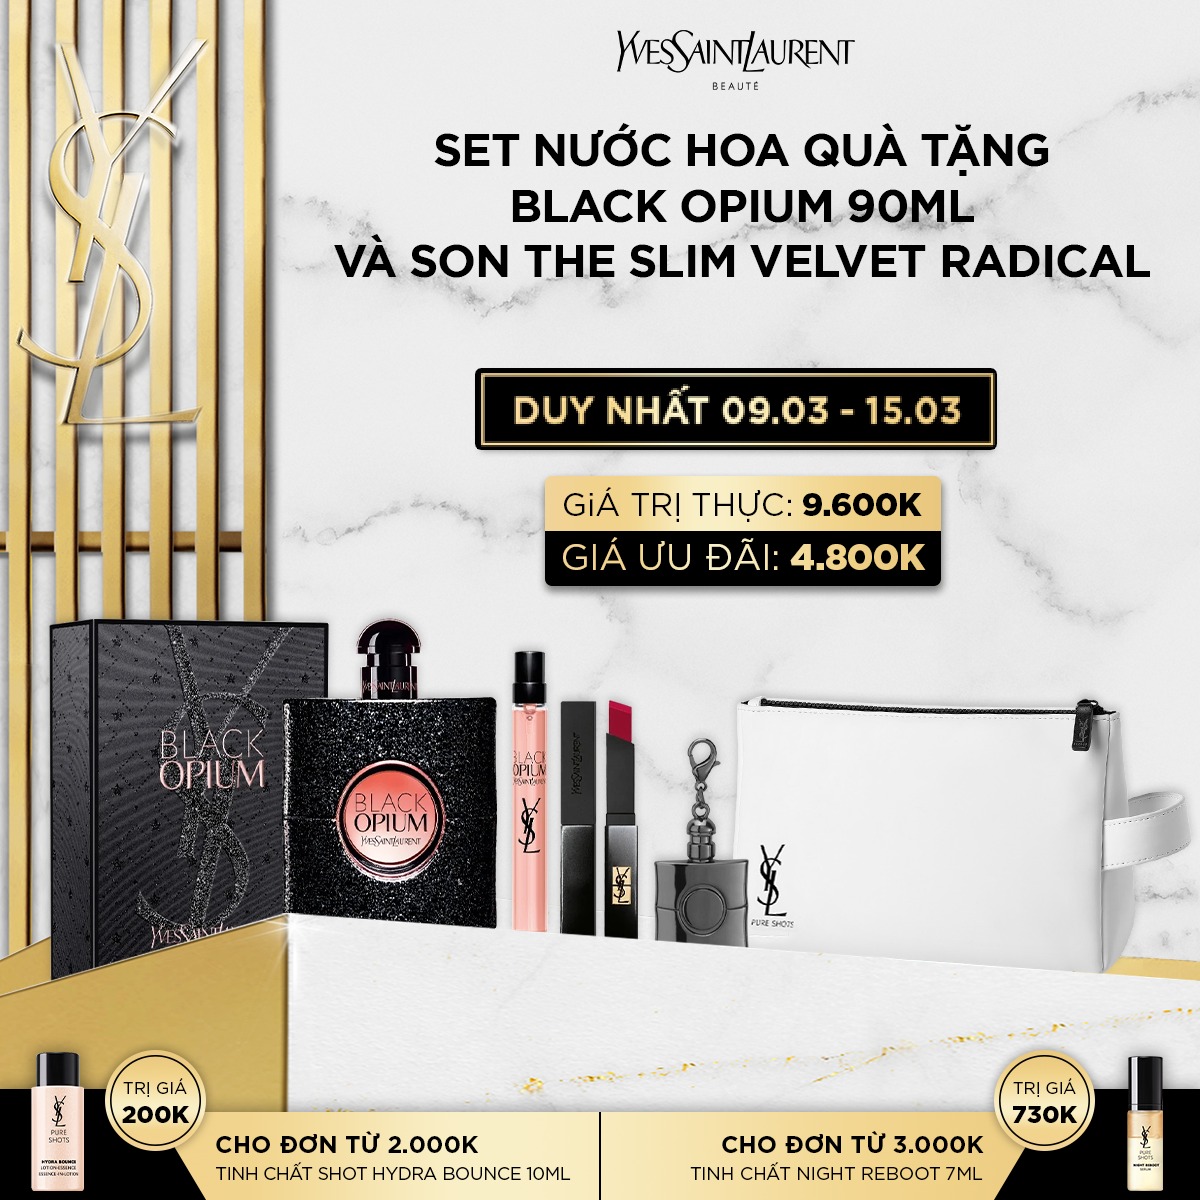 [8MAR] Set quà tặng nước hoa Black Opium 90ml và son The slim308